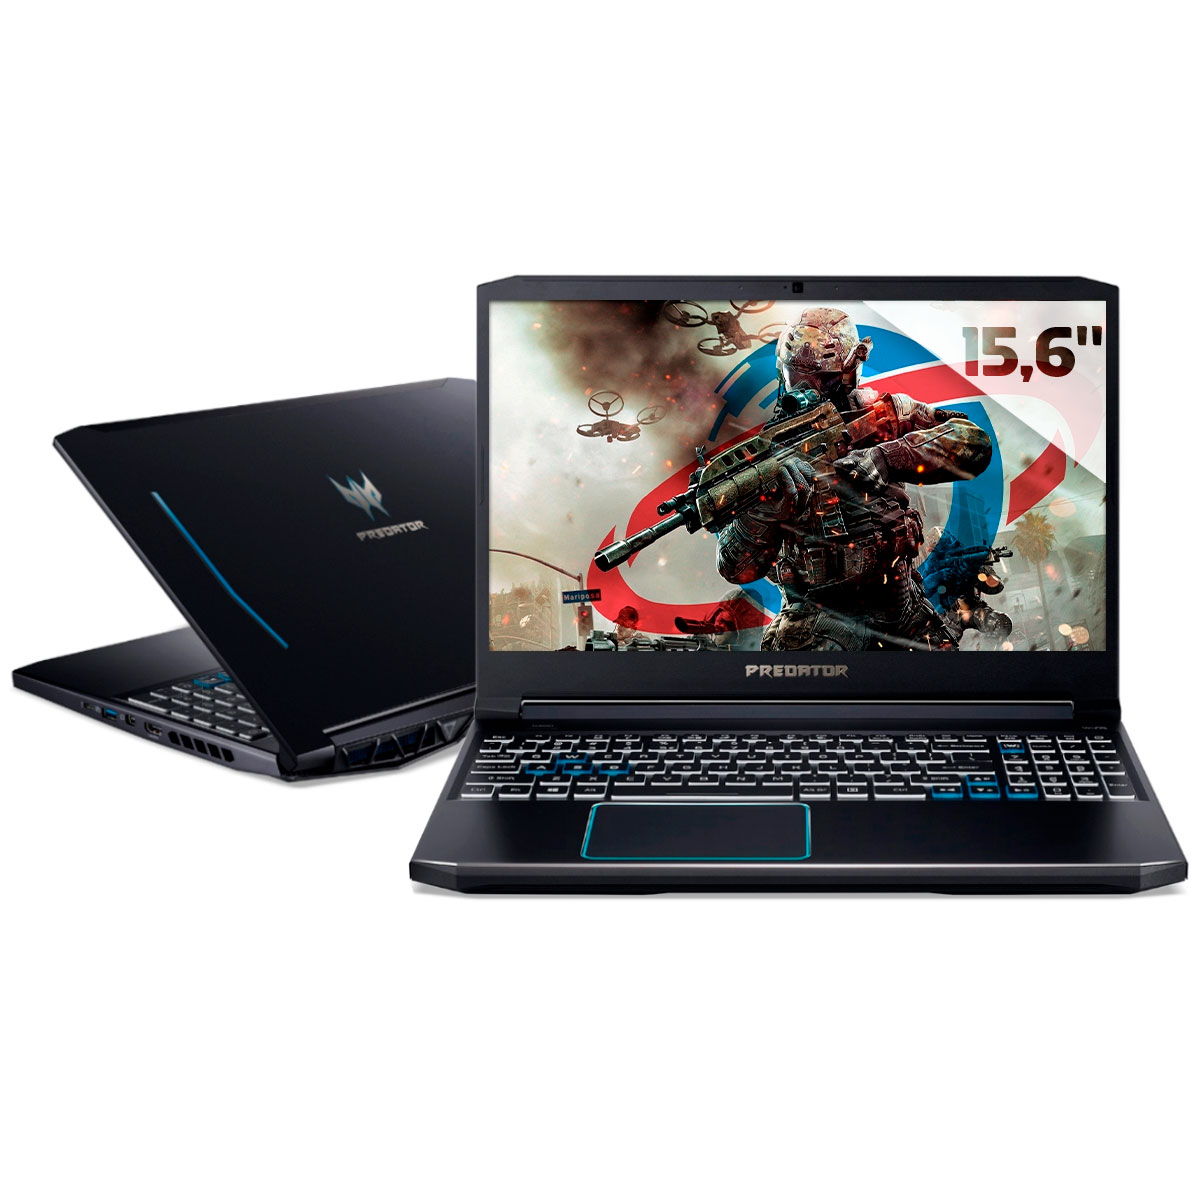 Notebook Acer Gaming Predator Helios 300 - Intel i7 10750H, RAM 64GB, SSD 512GB + HD 2TB, GeForce RTX 2070, Tela 15.6